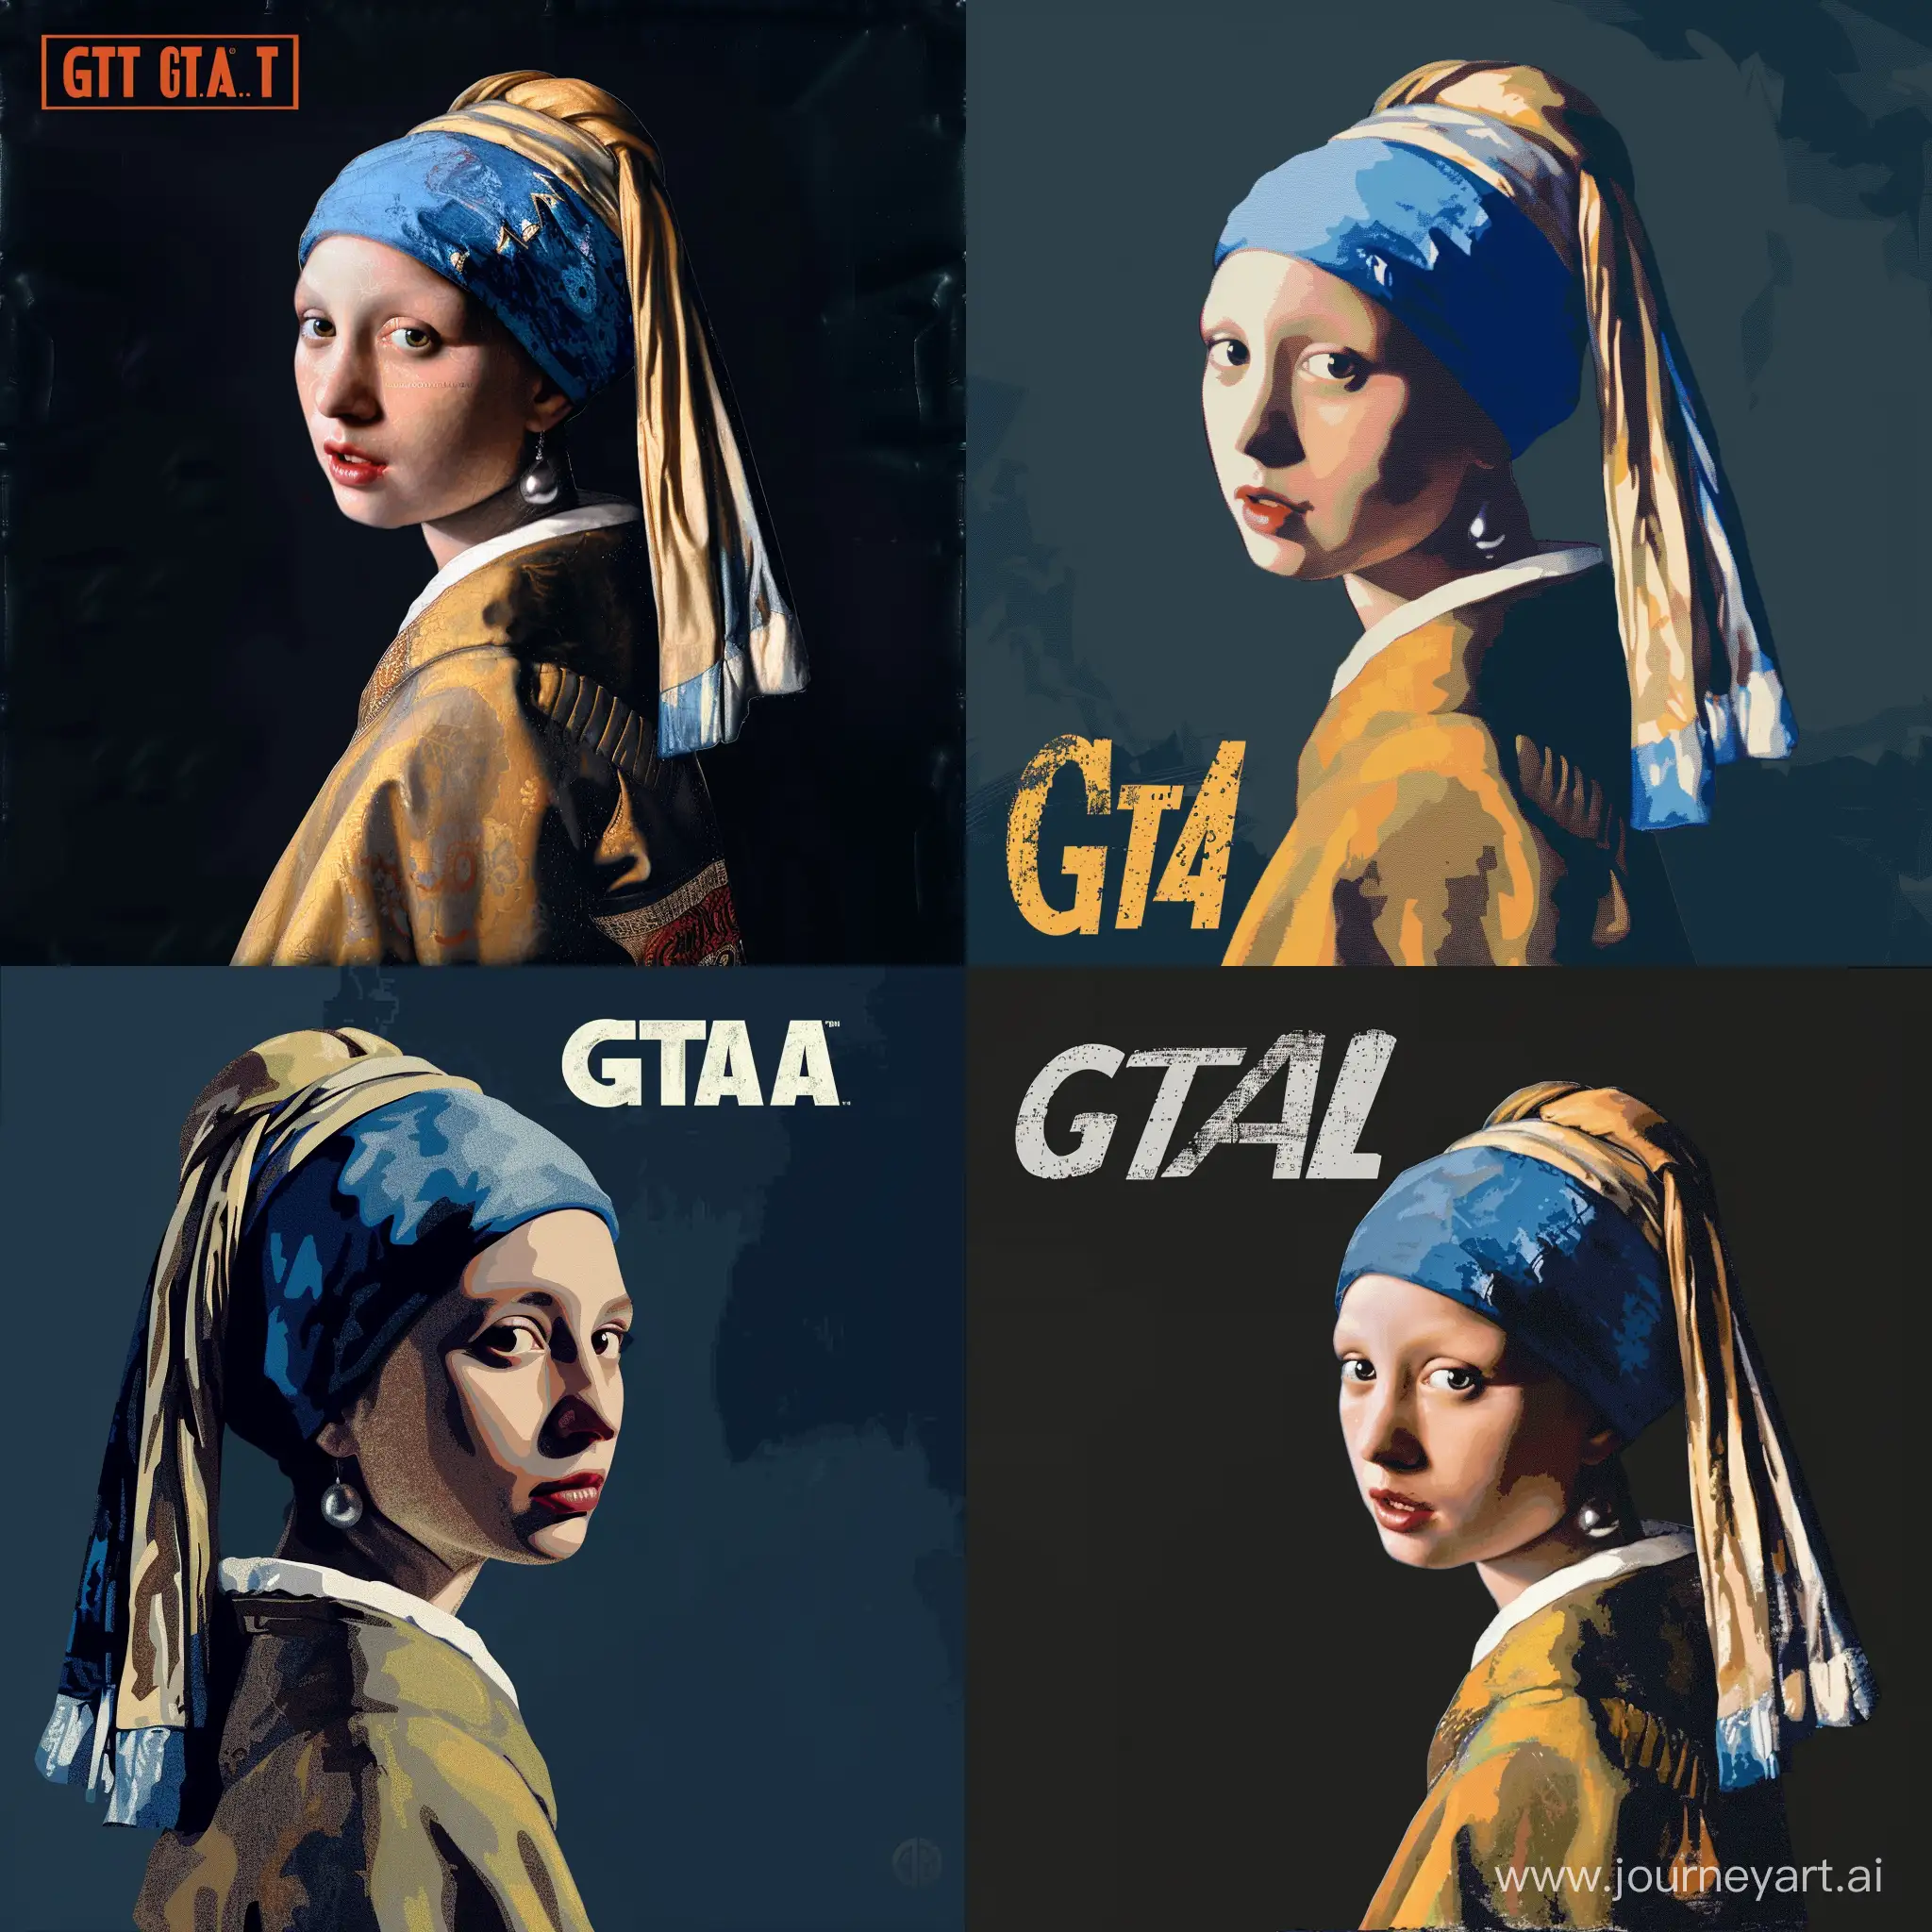 девушка с жемчужной сережкой вермеера в стиле gta
постер игры gta
дерзкая